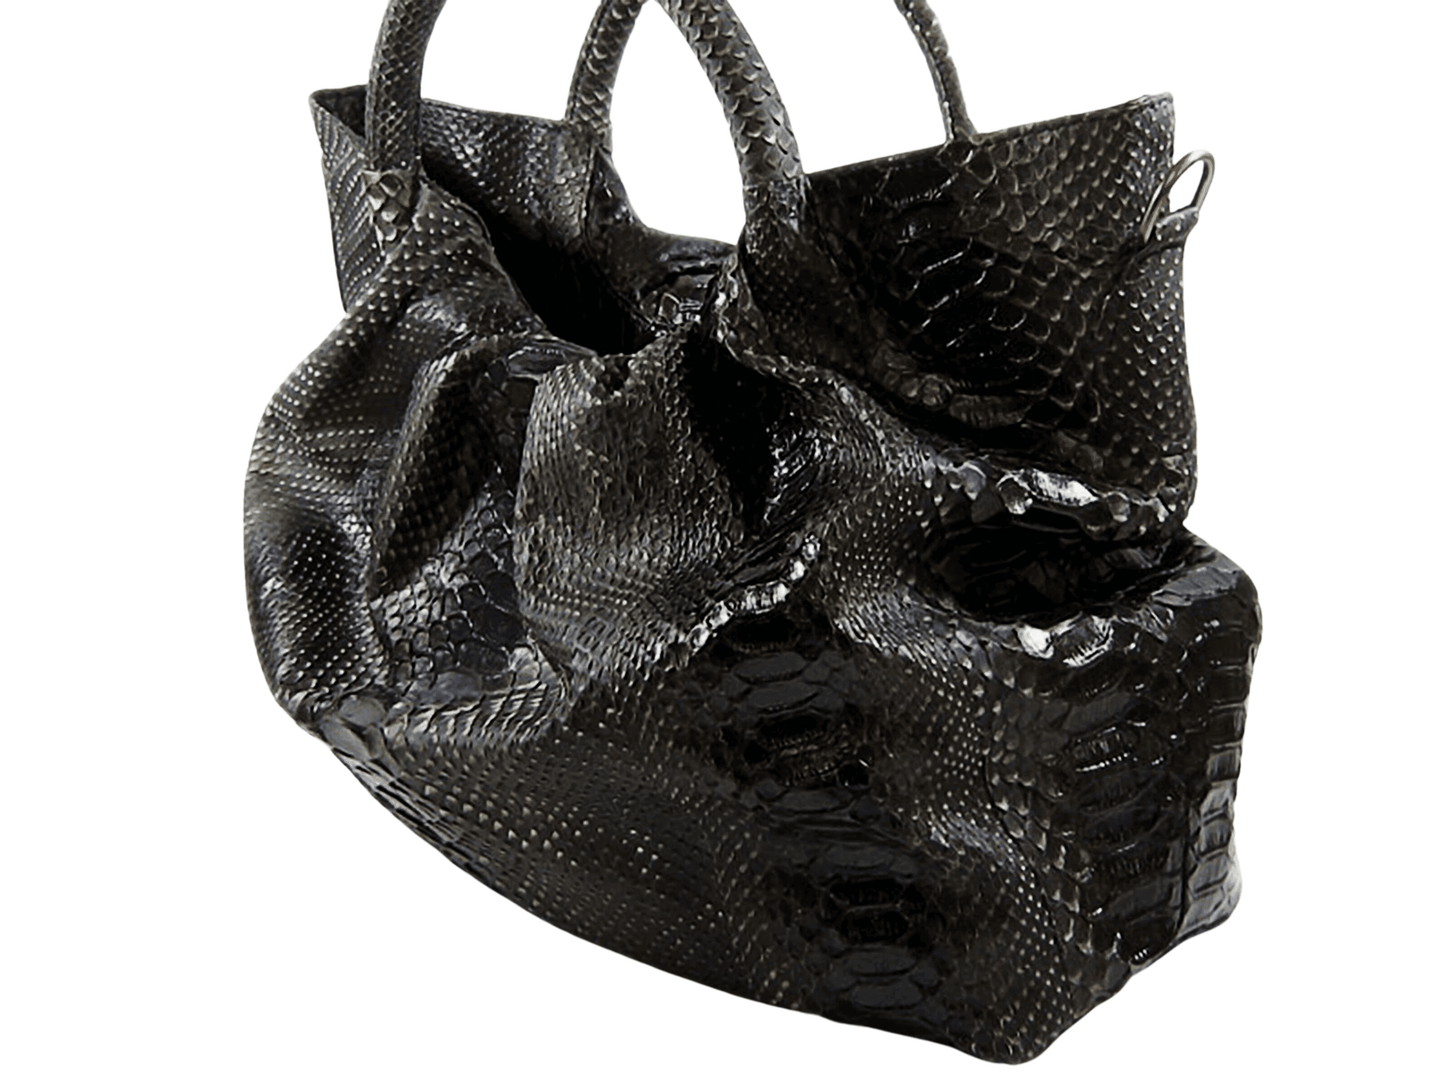 Snakeskin Hobo Floy Handbag Python Jacket by LFM Fashion